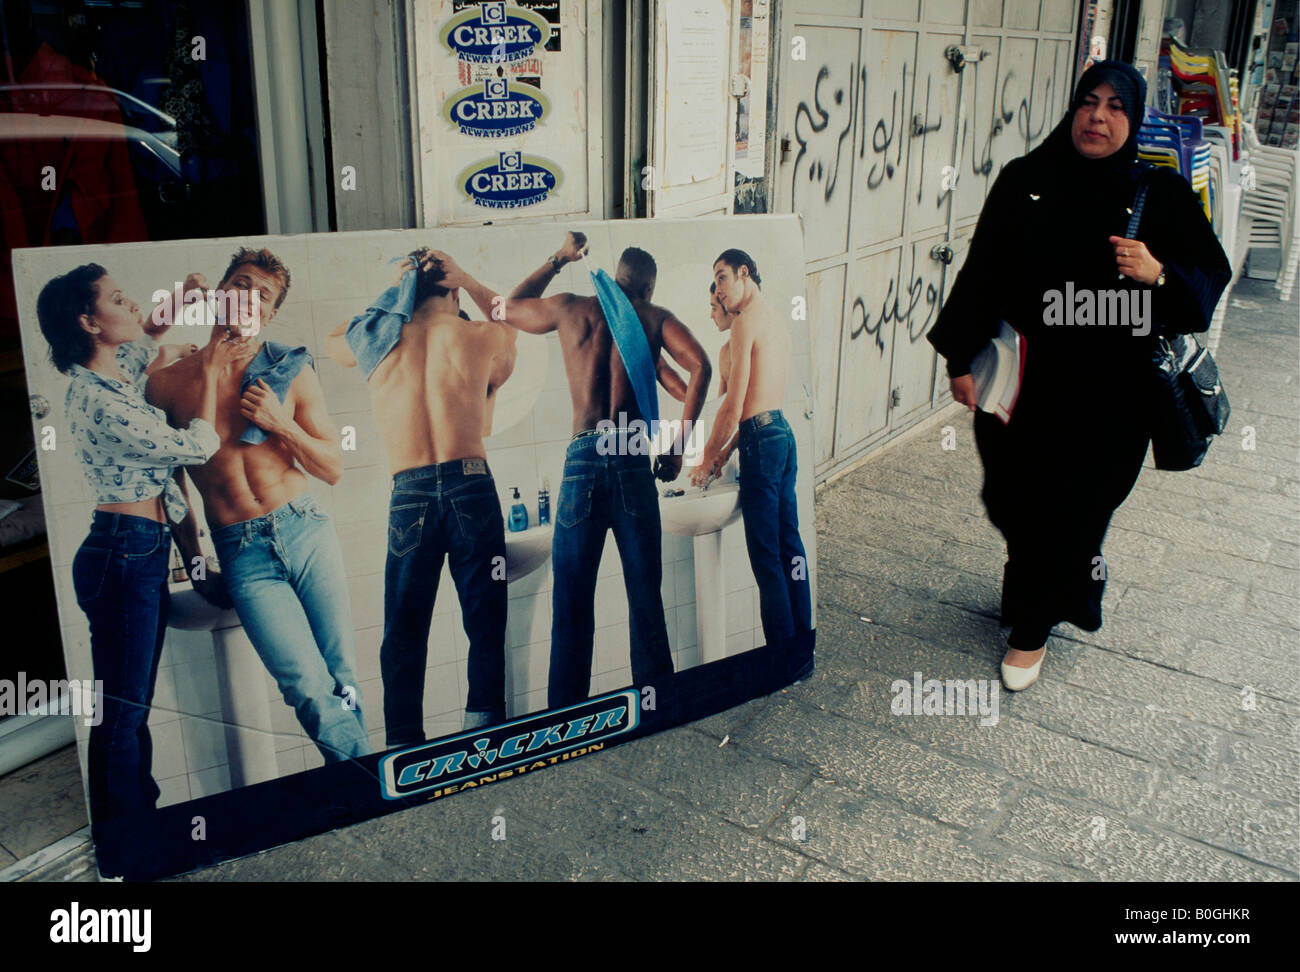 Une femme palestinienne en passant devant une affiche publicitaire de style occidental dans le quartier arabe de Jérusalem, Israël. Banque D'Images